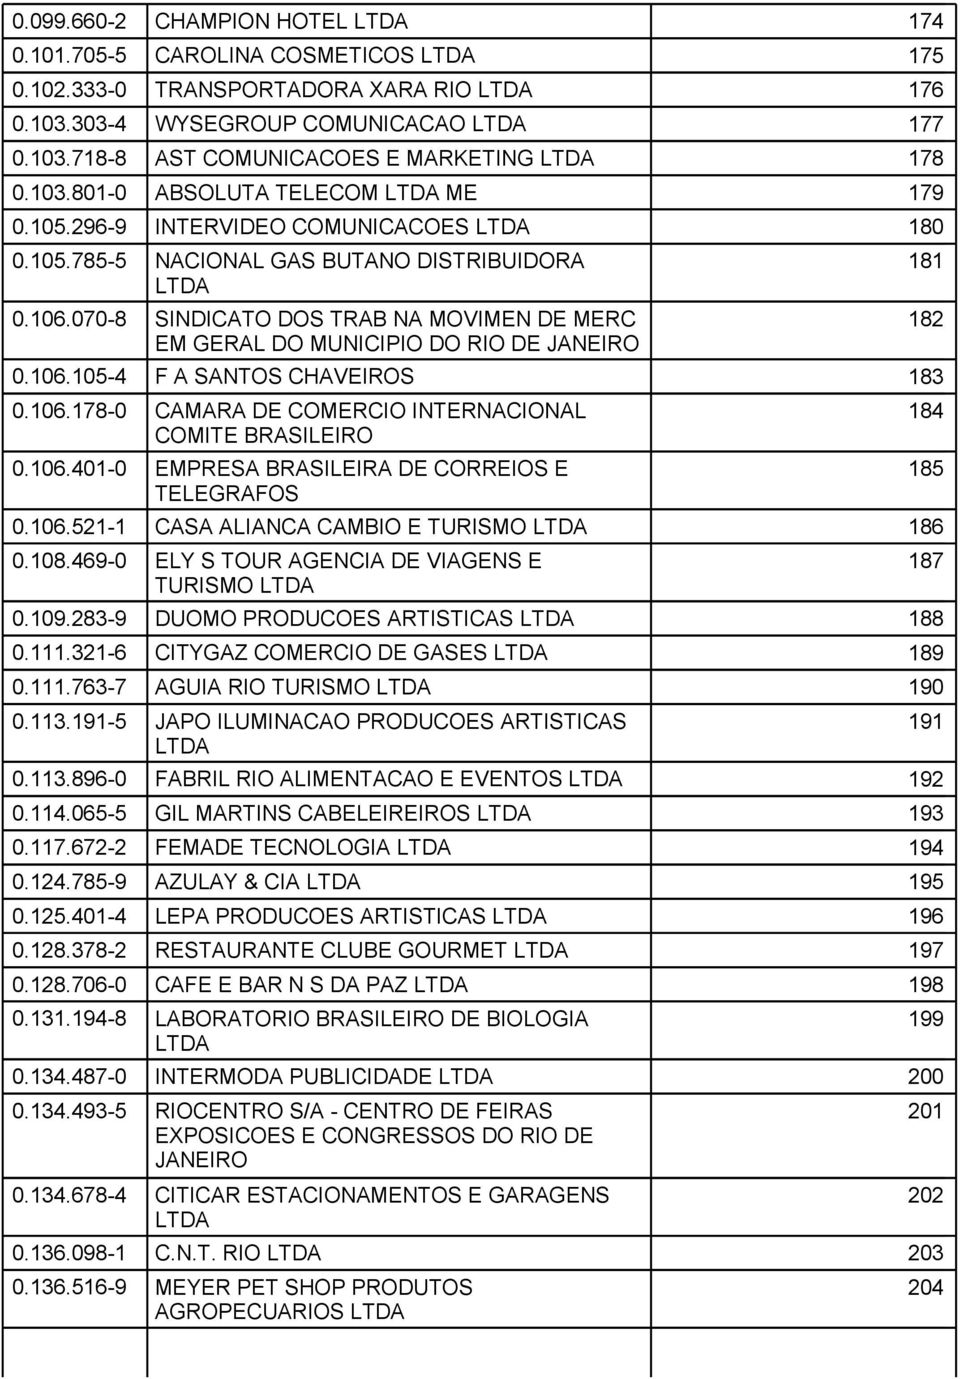 106.178-0 CAMARA DE COMERCIO INTERNACIONAL COMITE BRASILEIRO 0.106.401-0 EMPRESA BRASILEIRA DE CORREIOS E TELEGRAFOS 0.106.521-1 CASA ALIANCA CAMBIO E TURISMO 186 0.108.